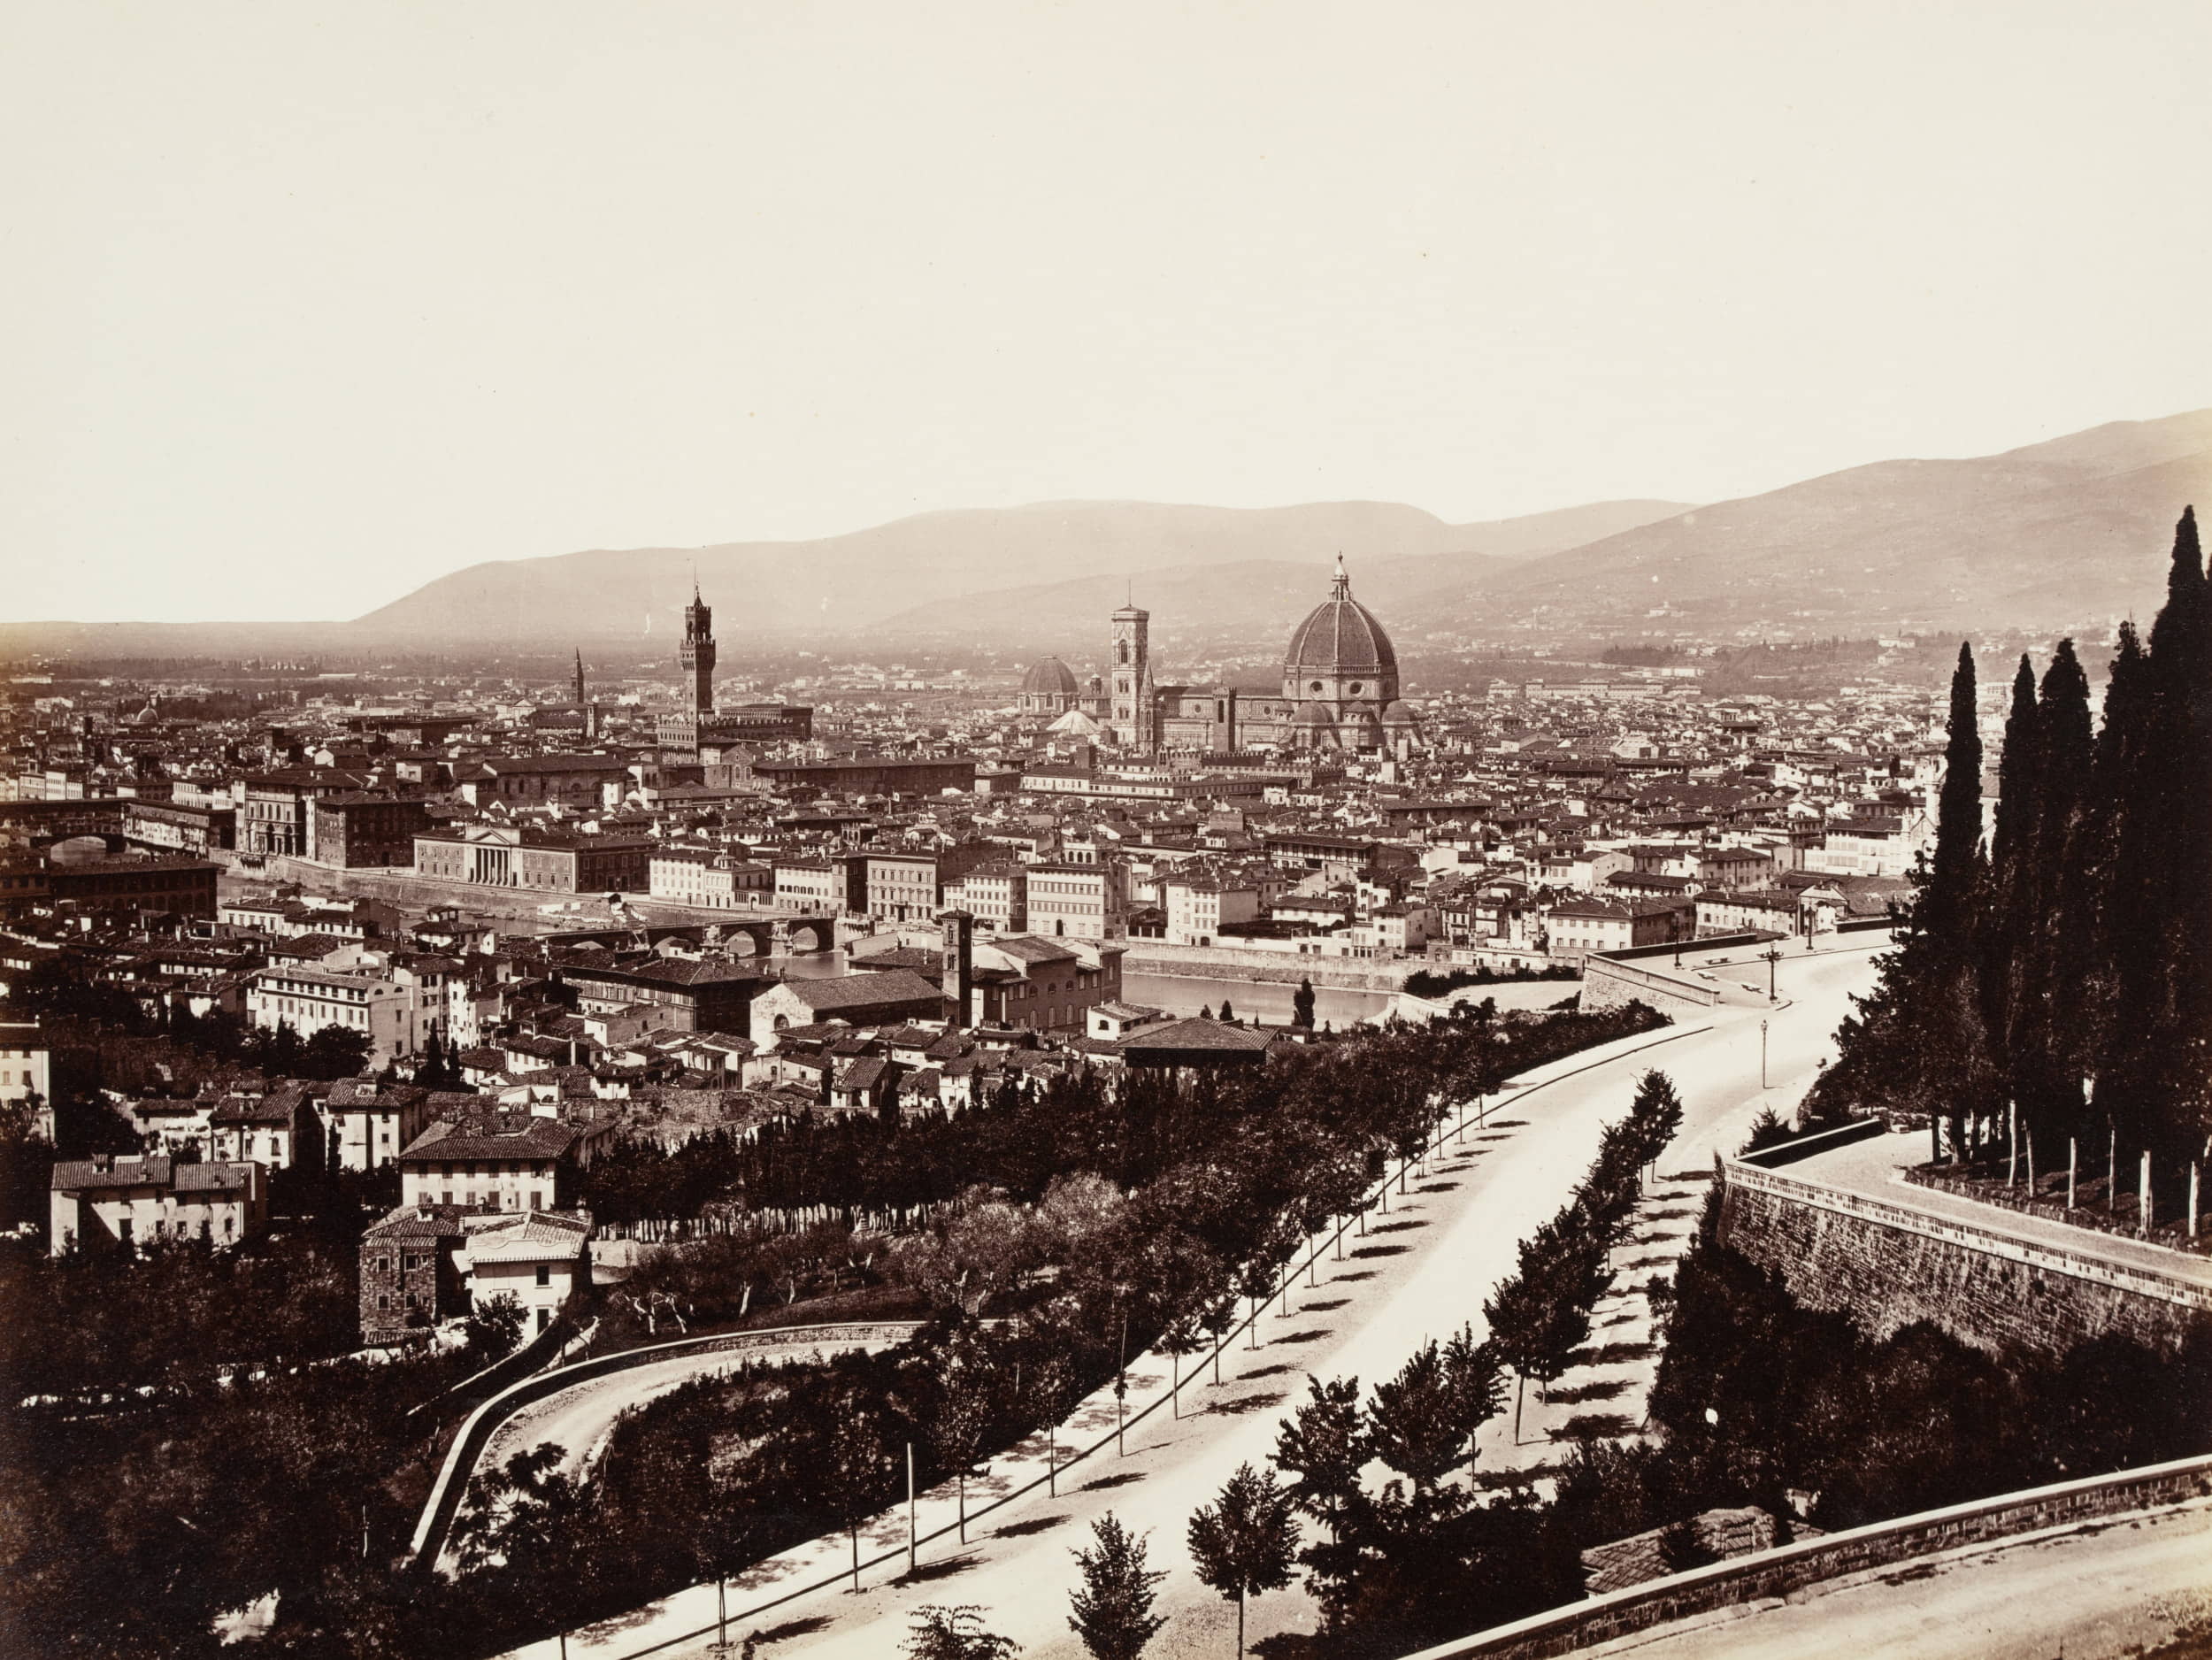 Ansicht von Florenz